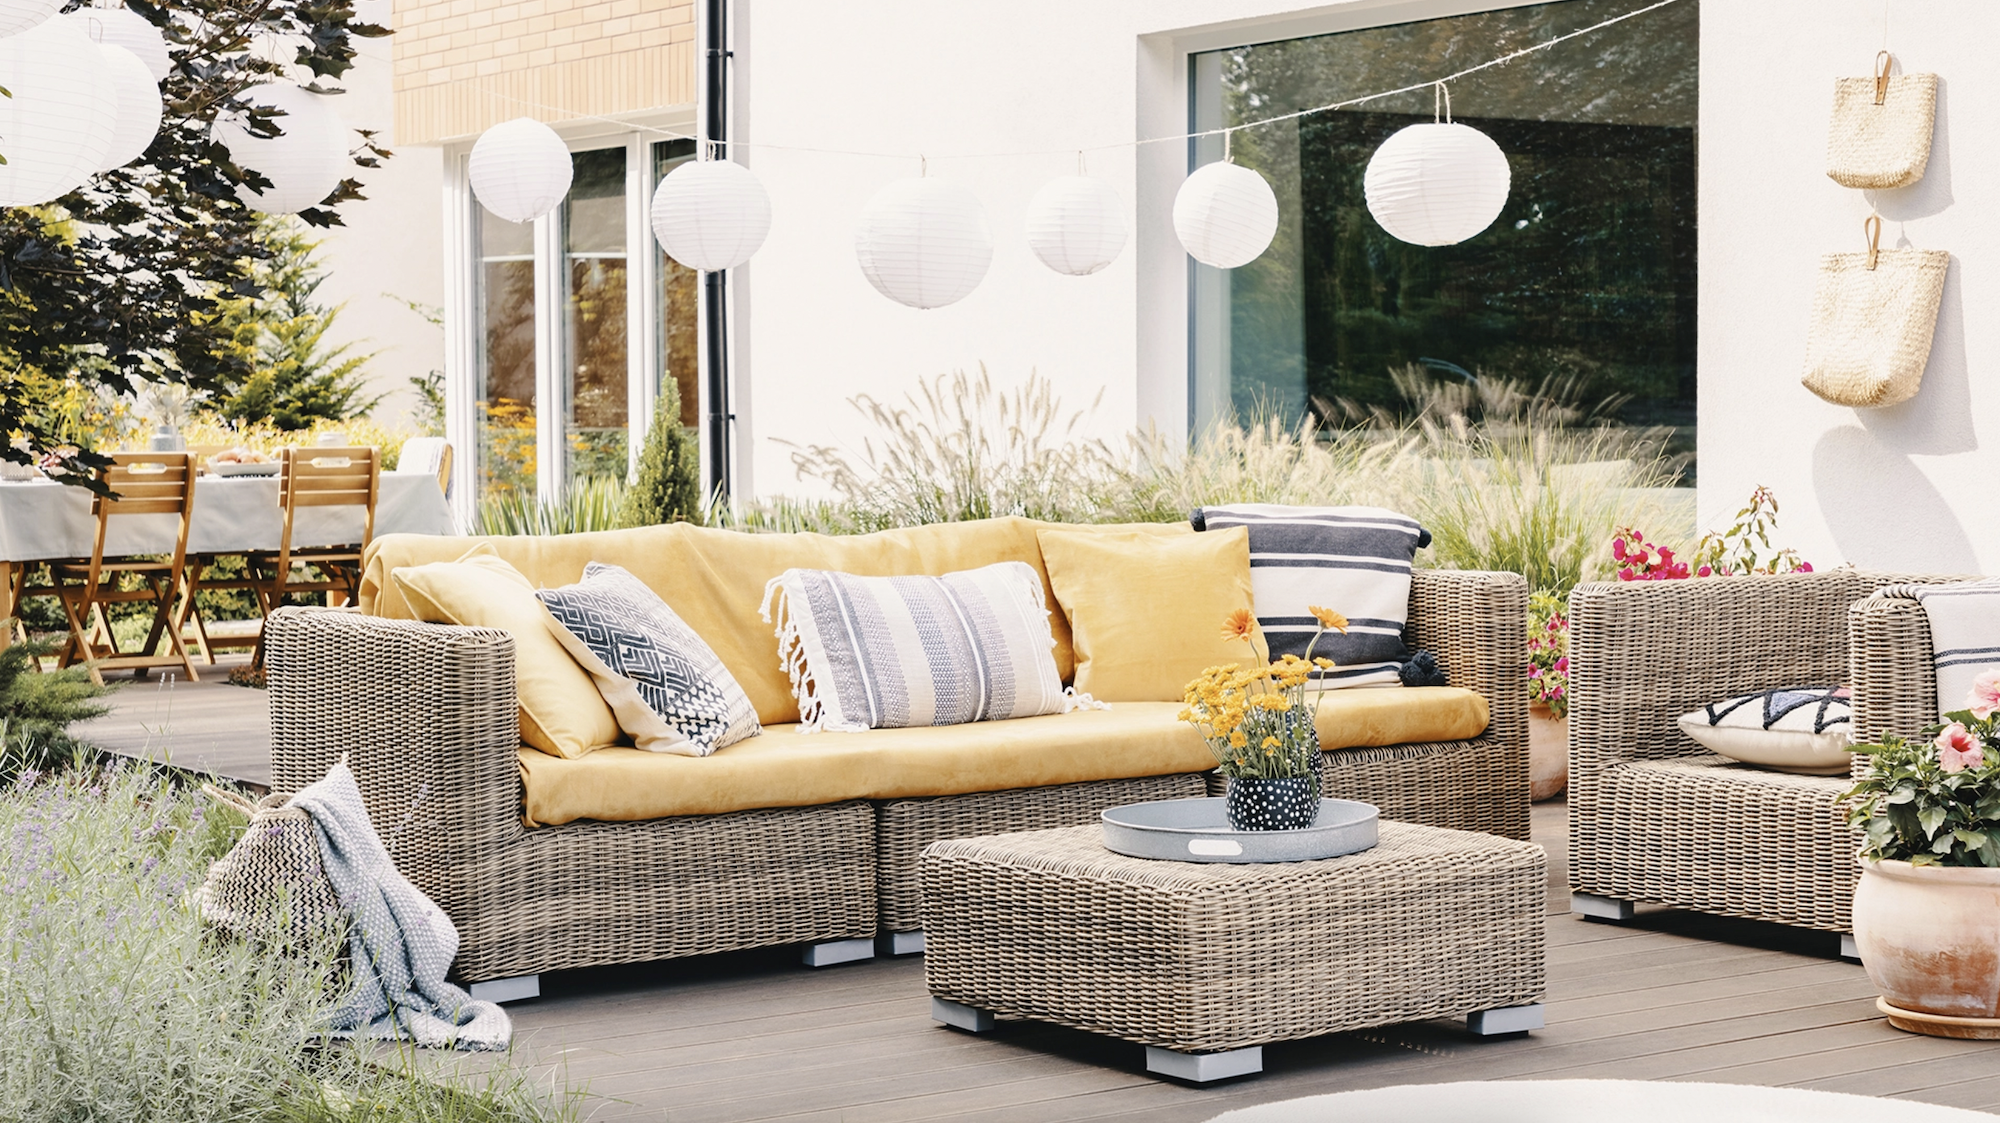 Buy Outdoor Furniture Online